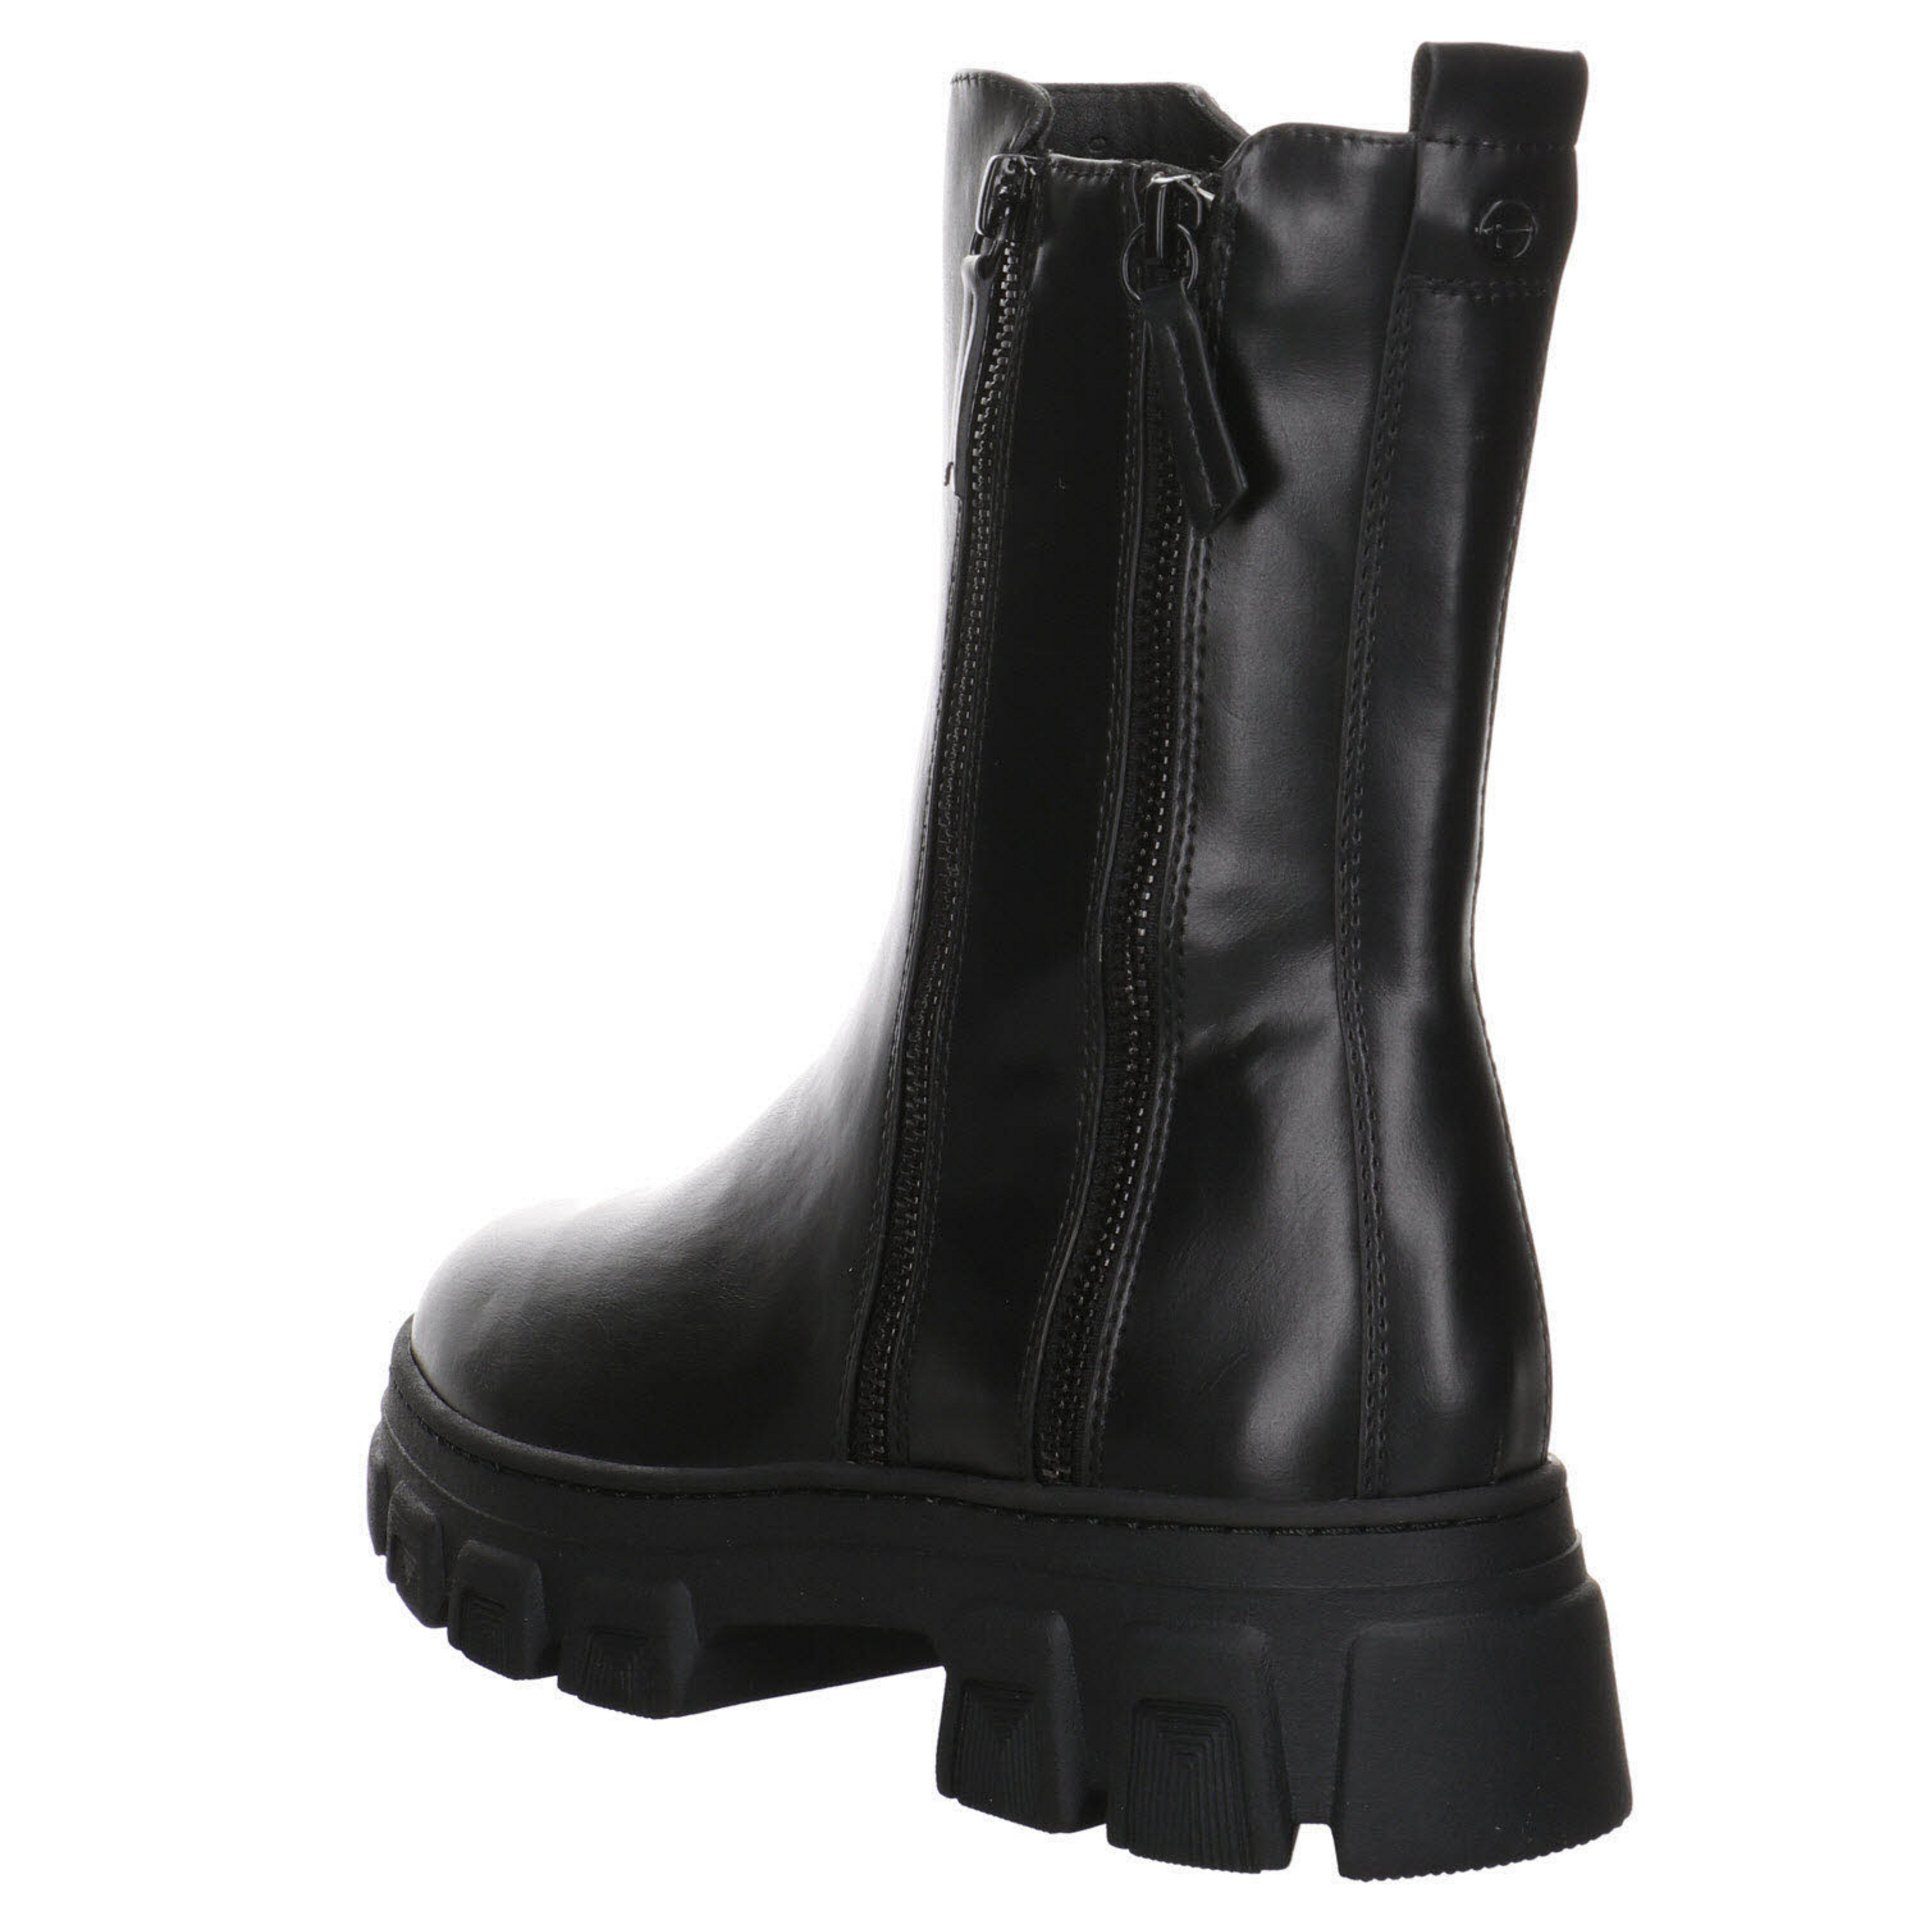 Damen Stiefeletten Stiefel Freizeit Tamaris Glattleder Boots BLACK Schuhe Elegant